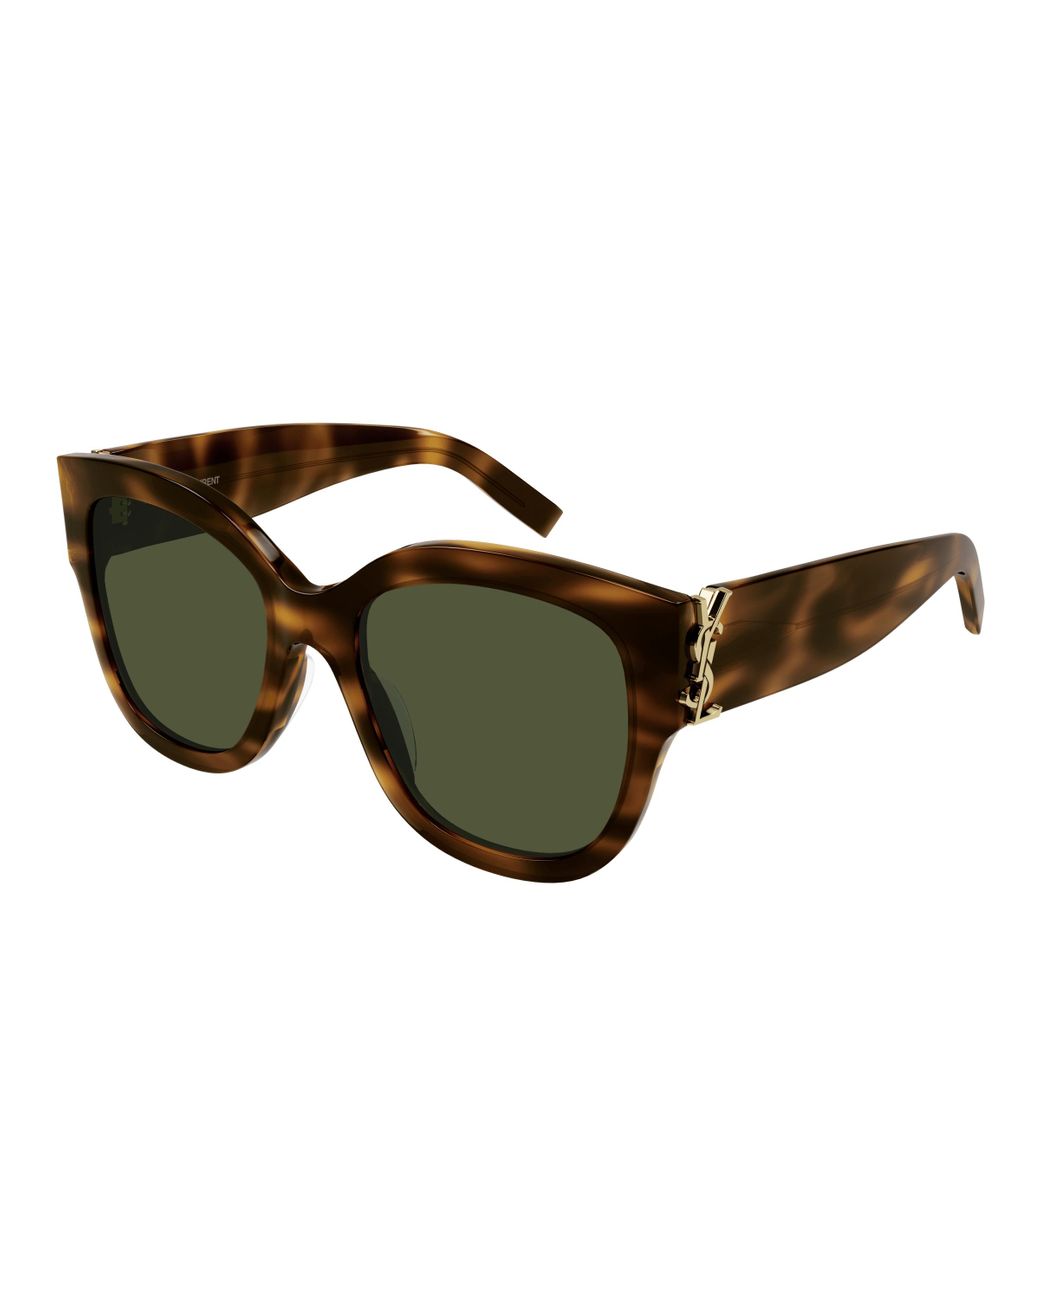 SL 563 half-rim elongated cat-eye sunglasses